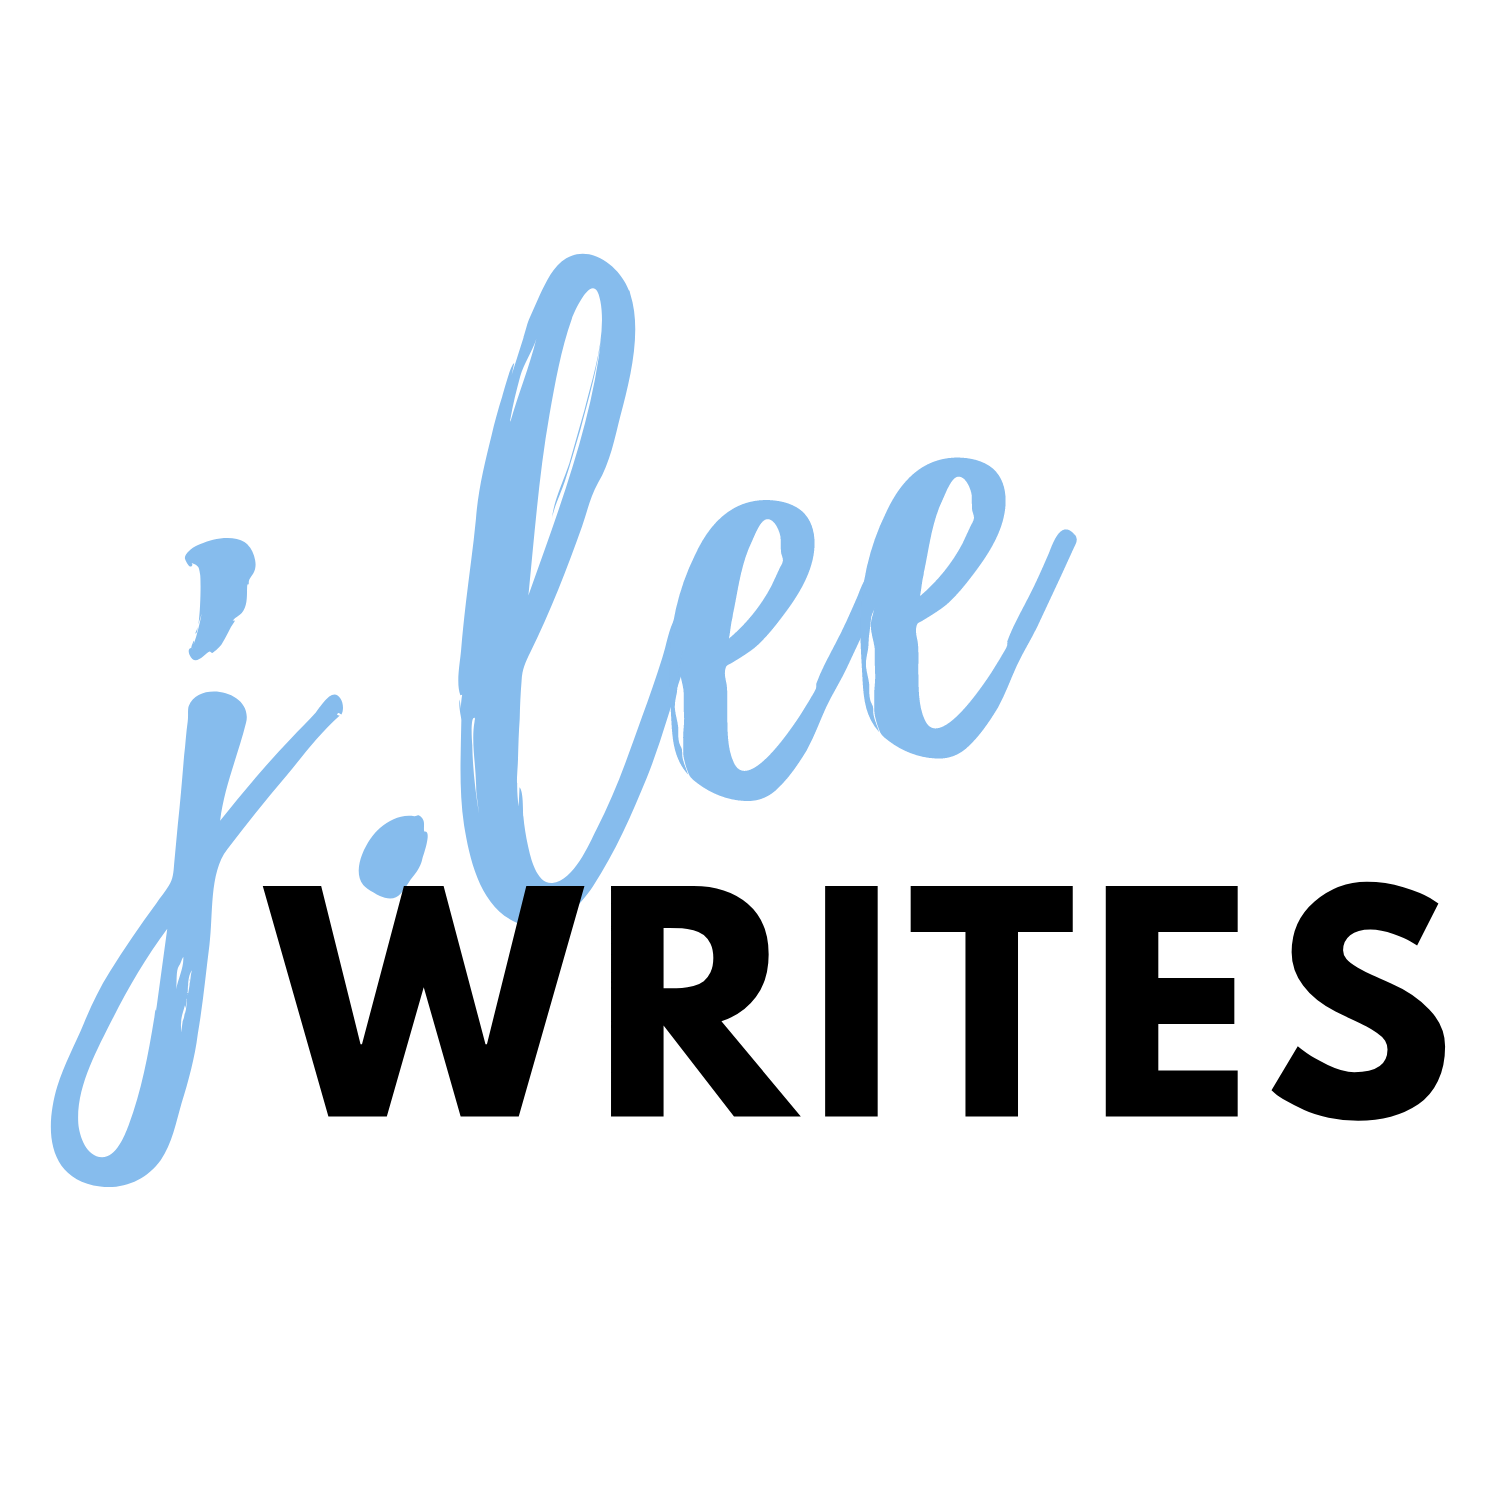 J.Lee Writes